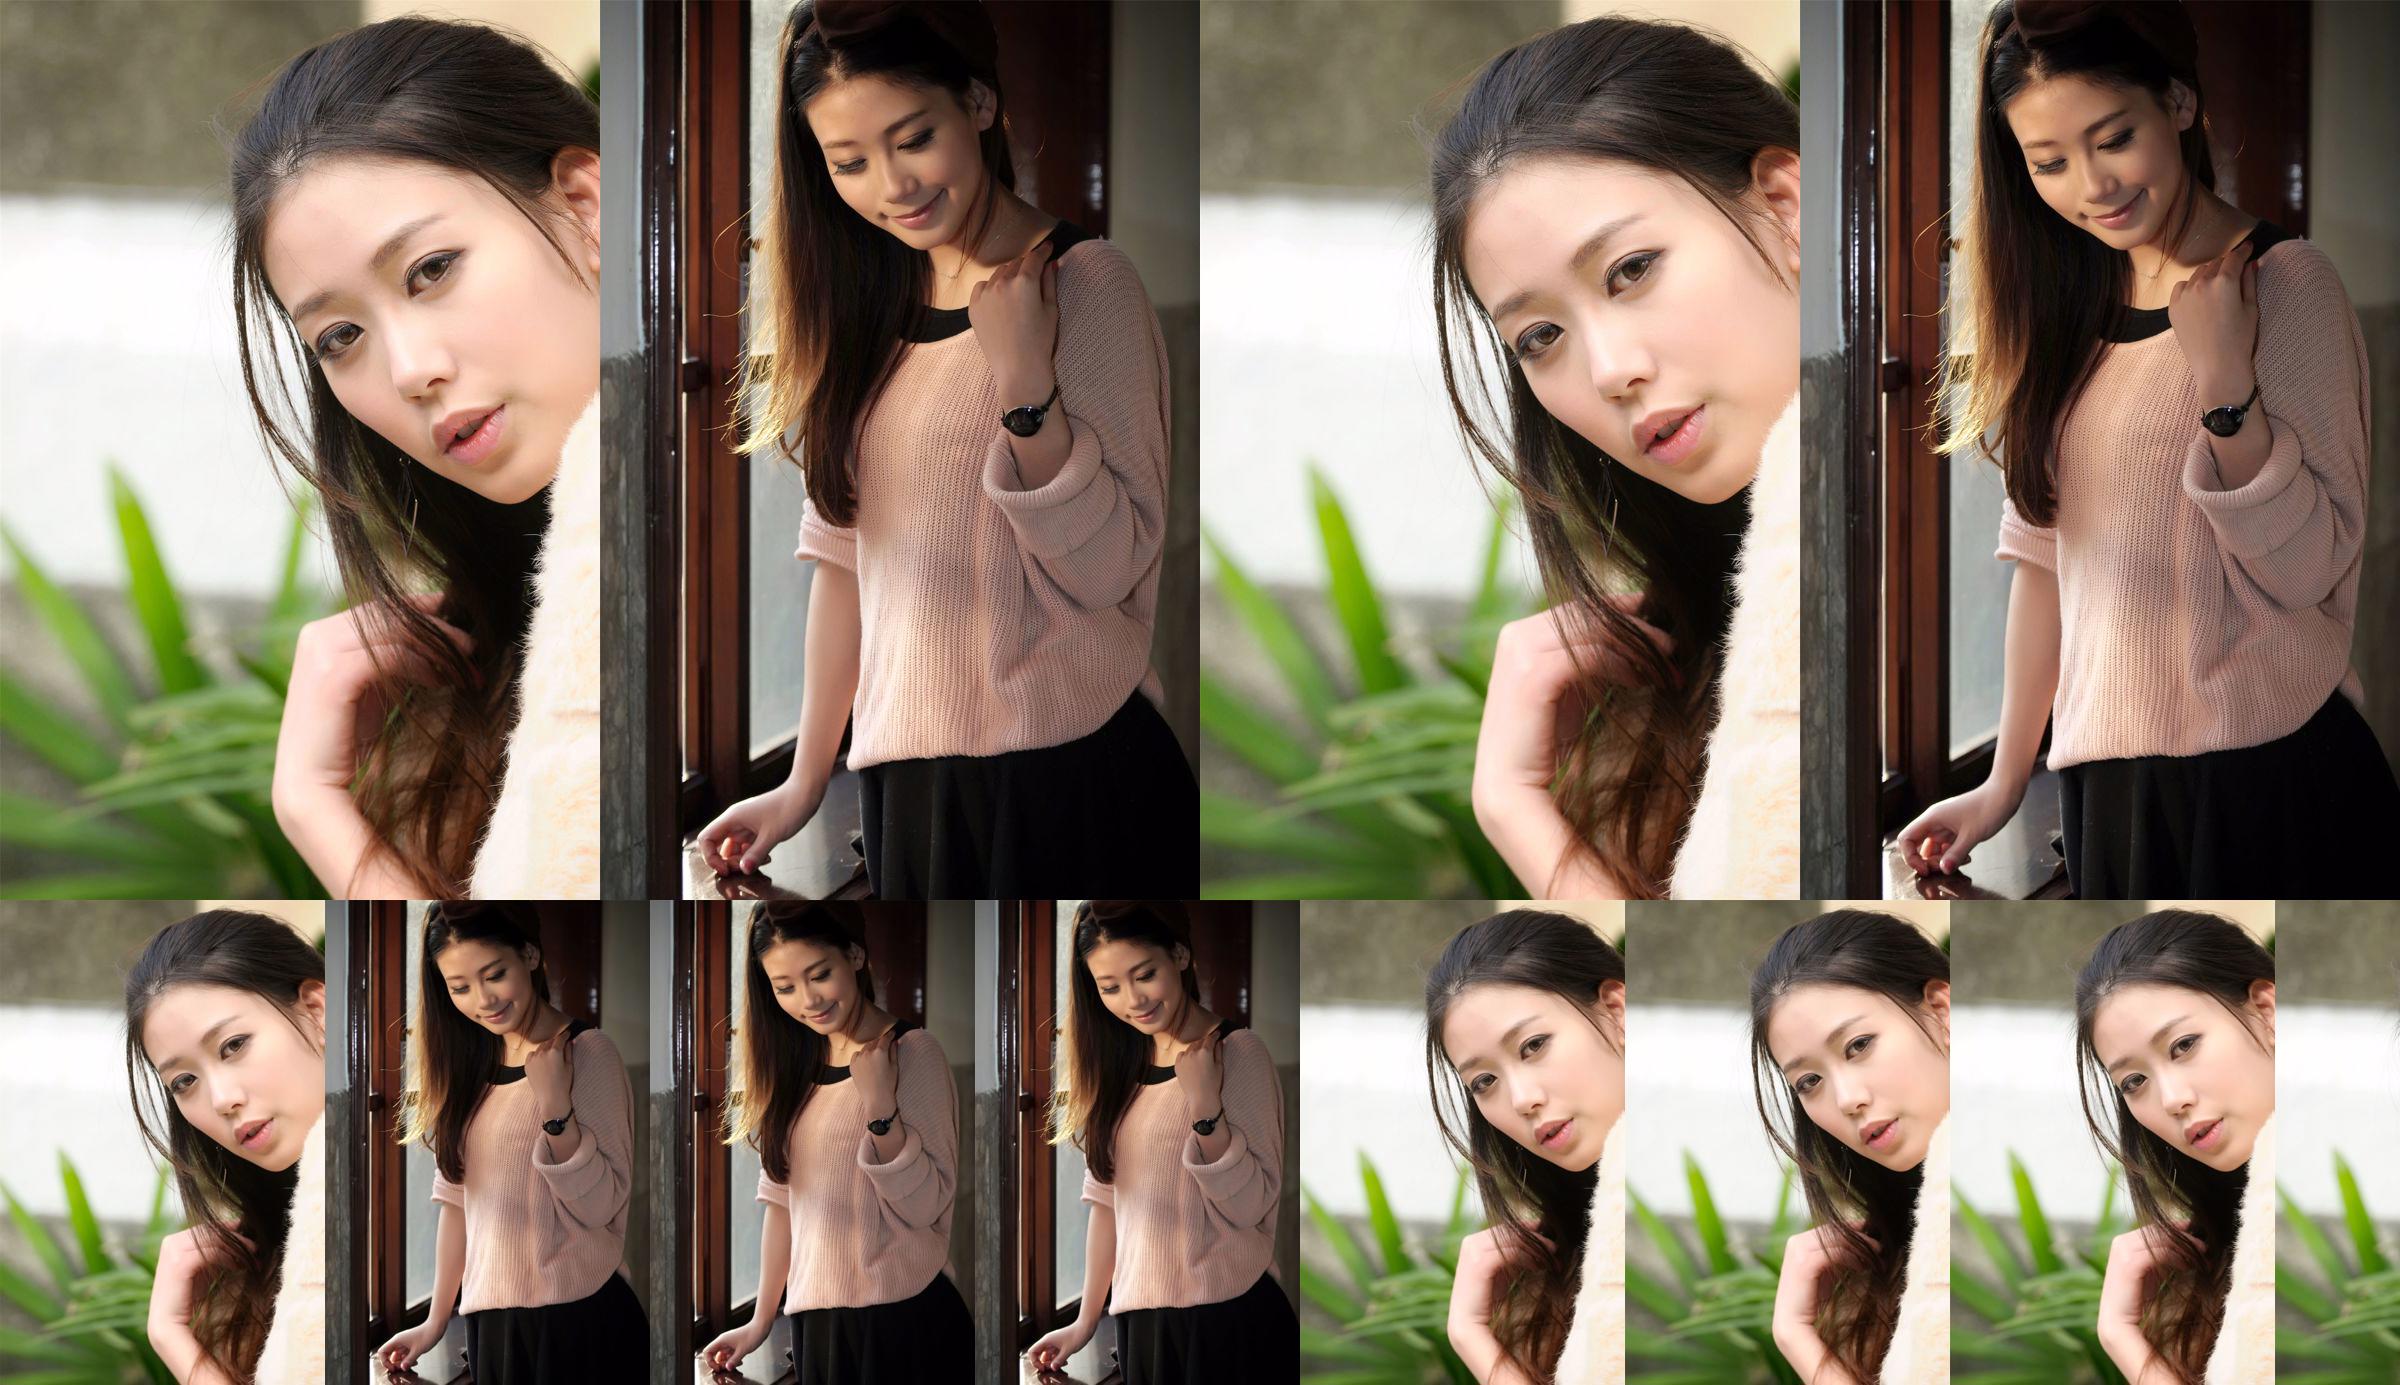 Die taiwanesische Göttin Jia Belle "Aesthetic Fashion Outing" No.6cea75 Seite 1